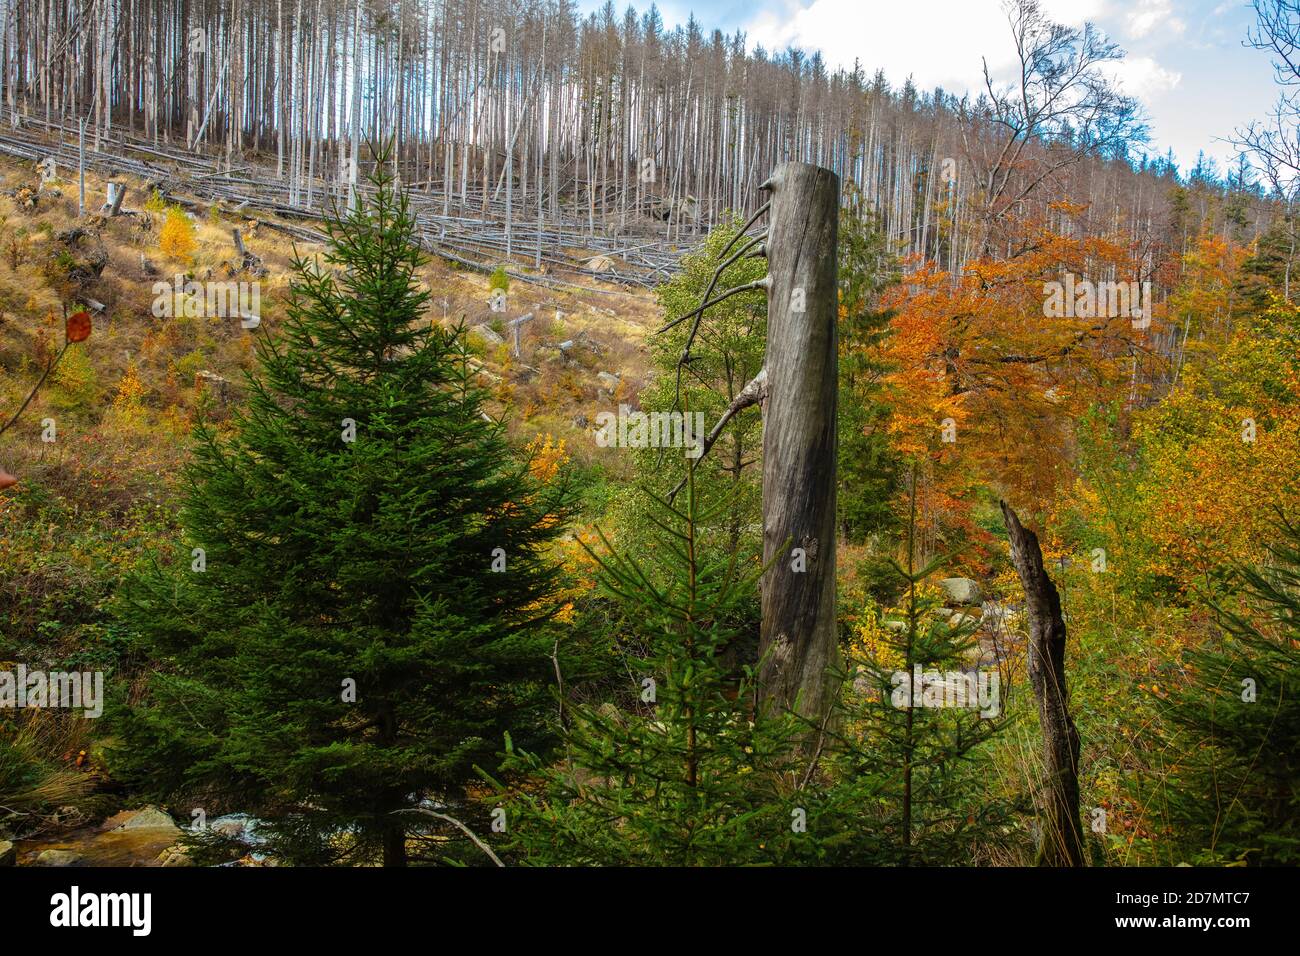 Deutschland, Sachsen-Anhalt, Nationalpark Harz. Waldsterben rund um den Brocken findet man tote Bäume. Die Fichten sind vom Borkenkäfer dahingerafft. Stock Photo